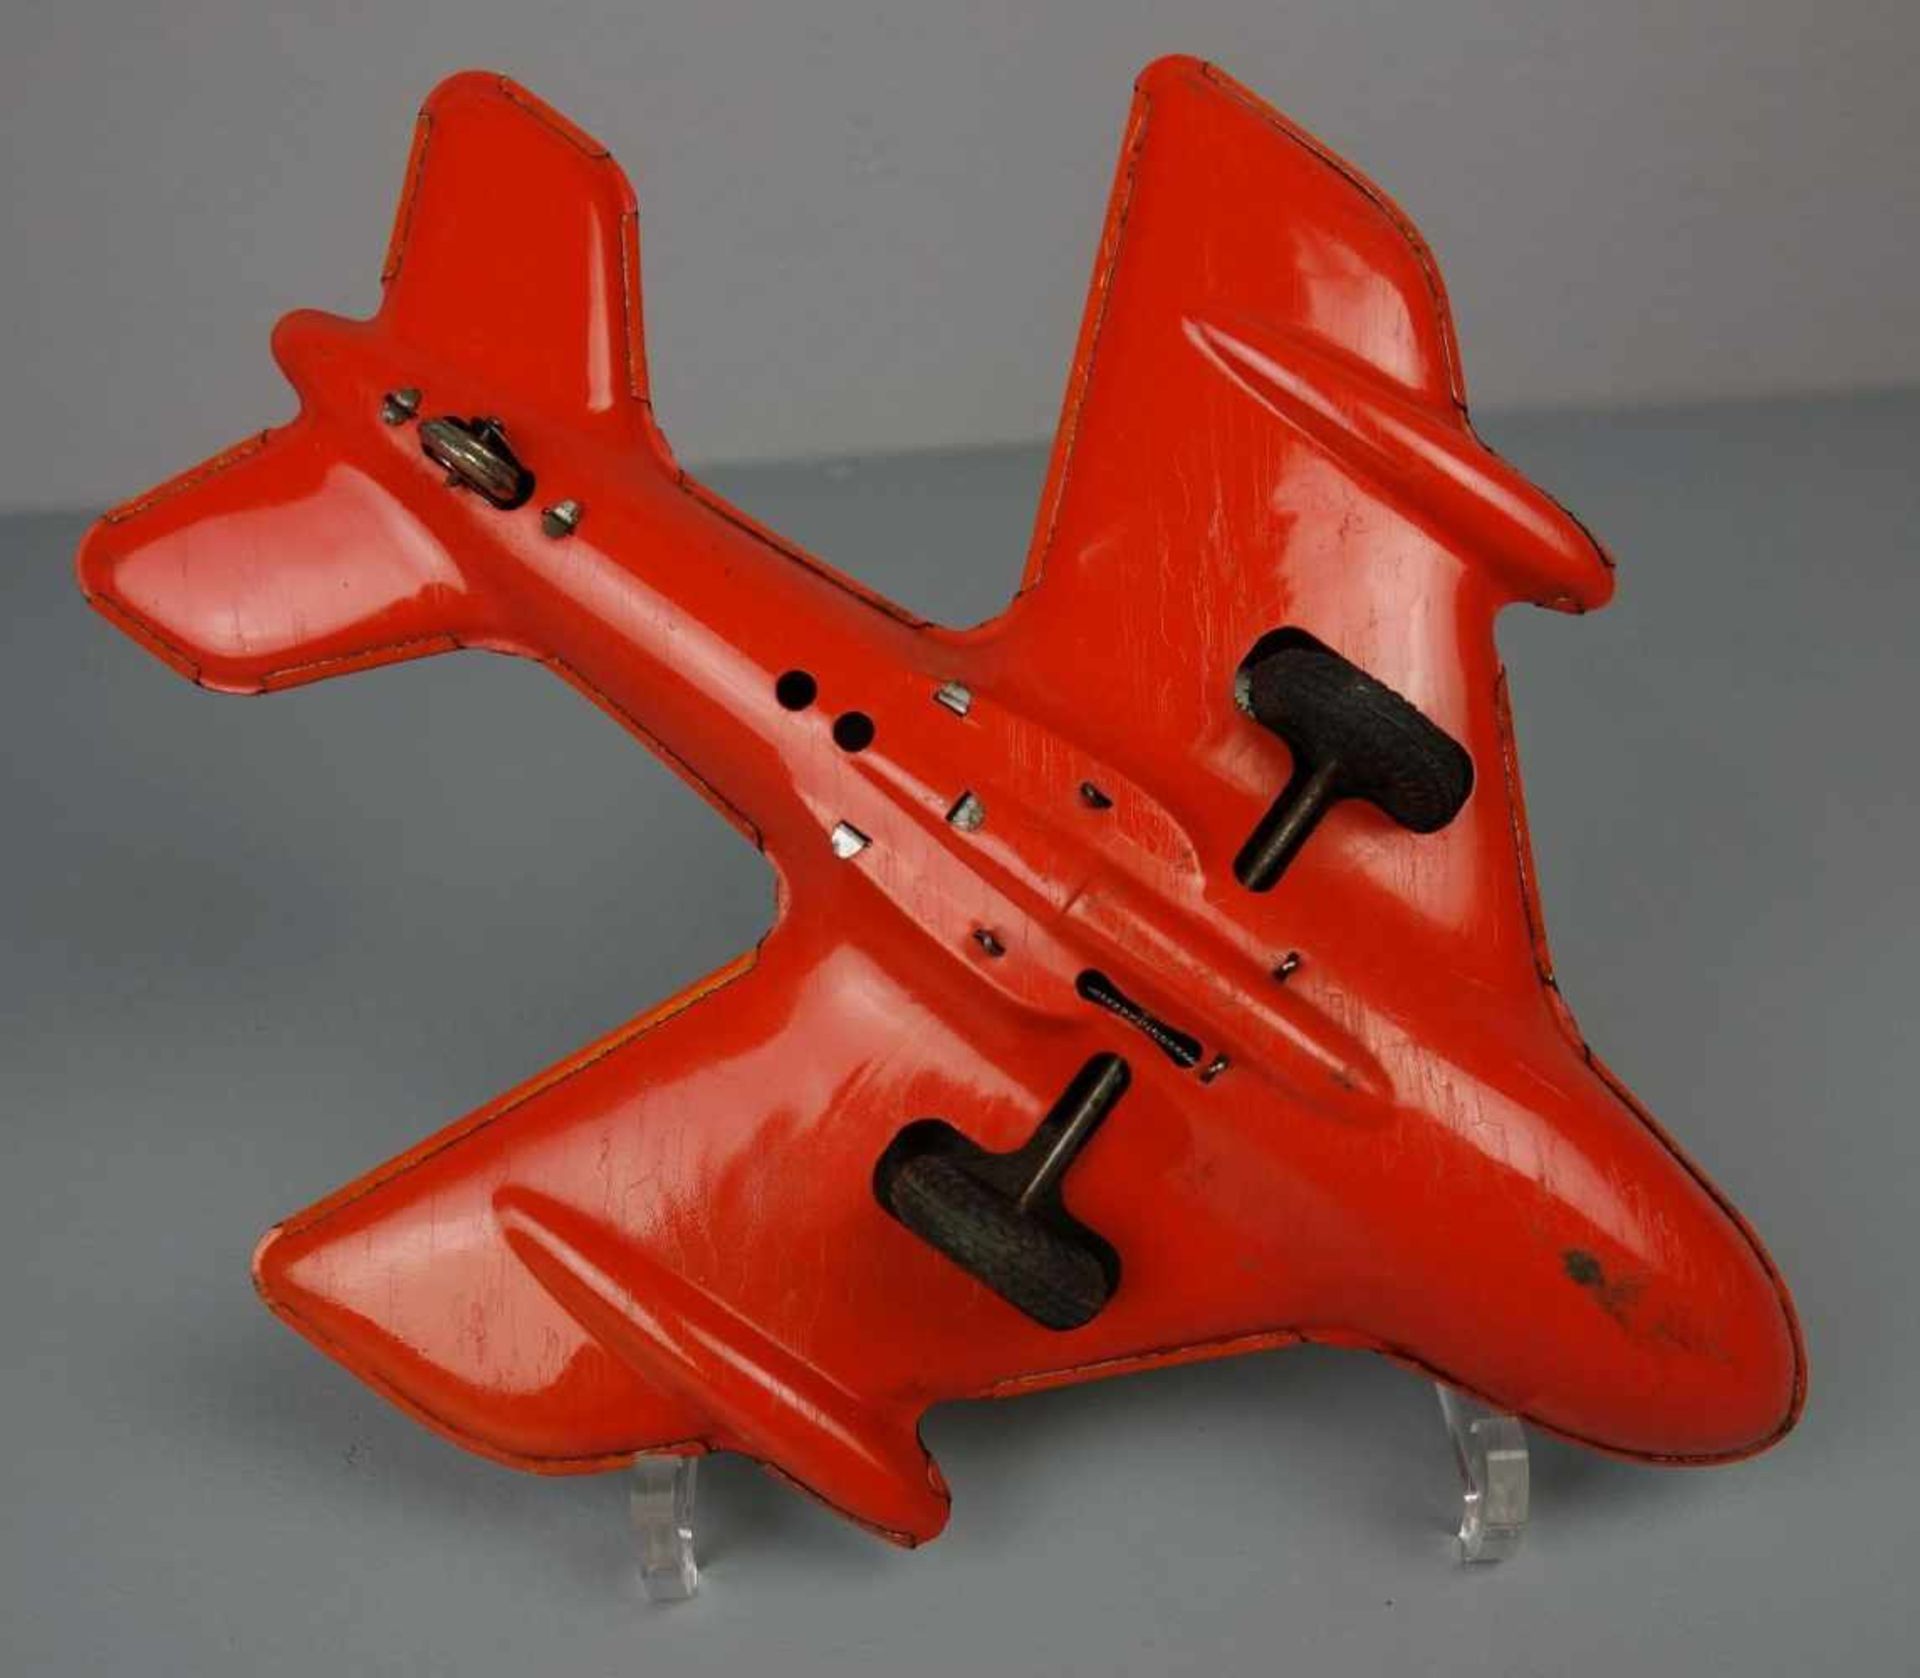 BLECHSPIELZEUG: TECHNOFIX FLUGZEUG / tin toy plane, Mitte 20. Jh., Manufaktur Gebrüder Einfalt - Image 4 of 4